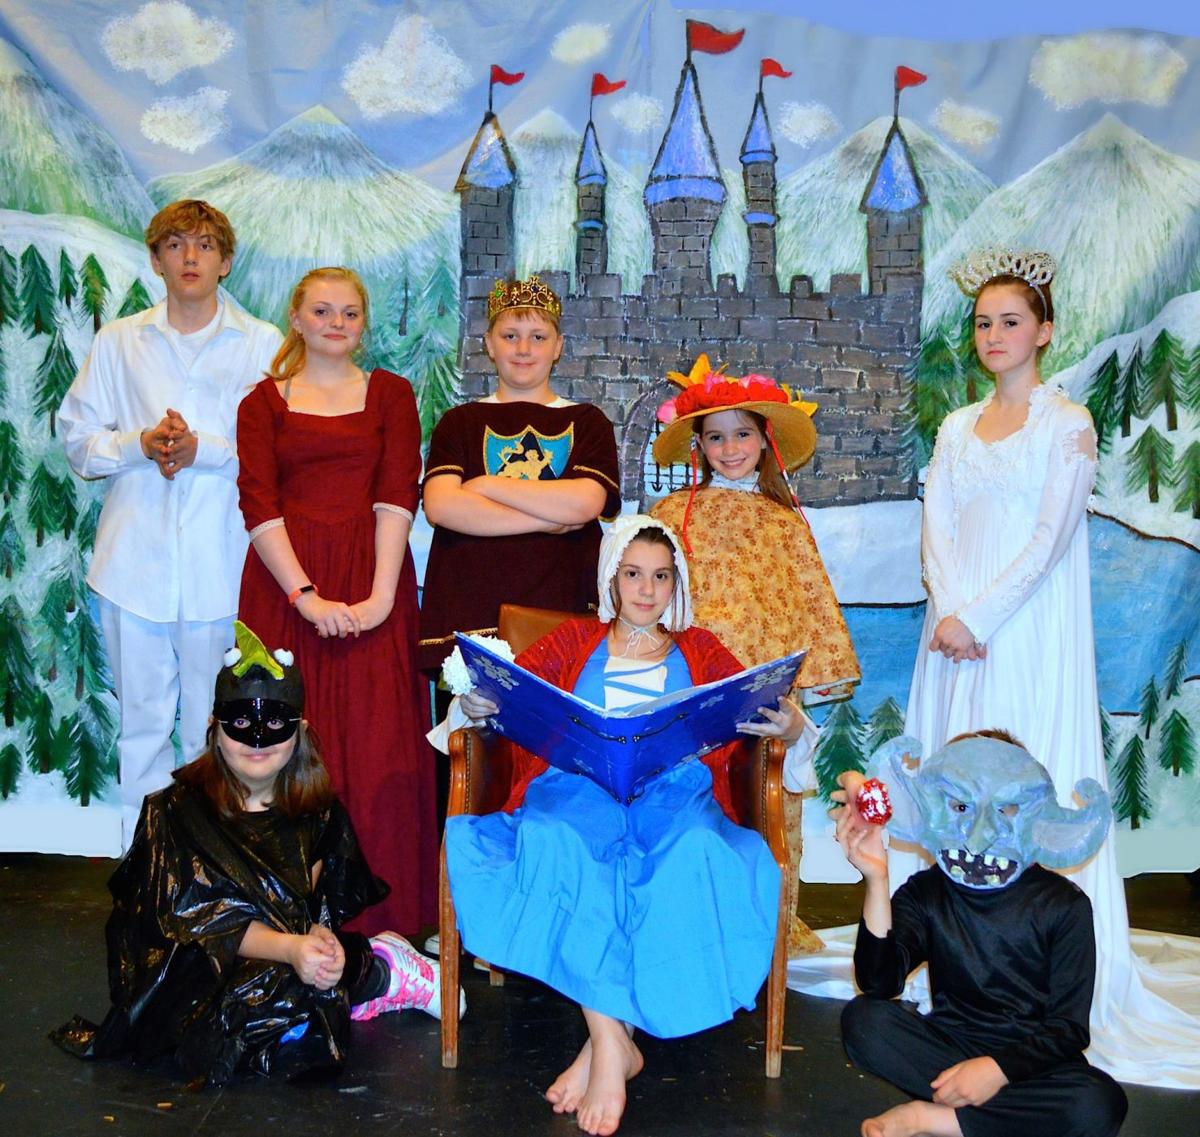 Home school students present 'The Snow Queen' | Arts | myeasternshoremd.com